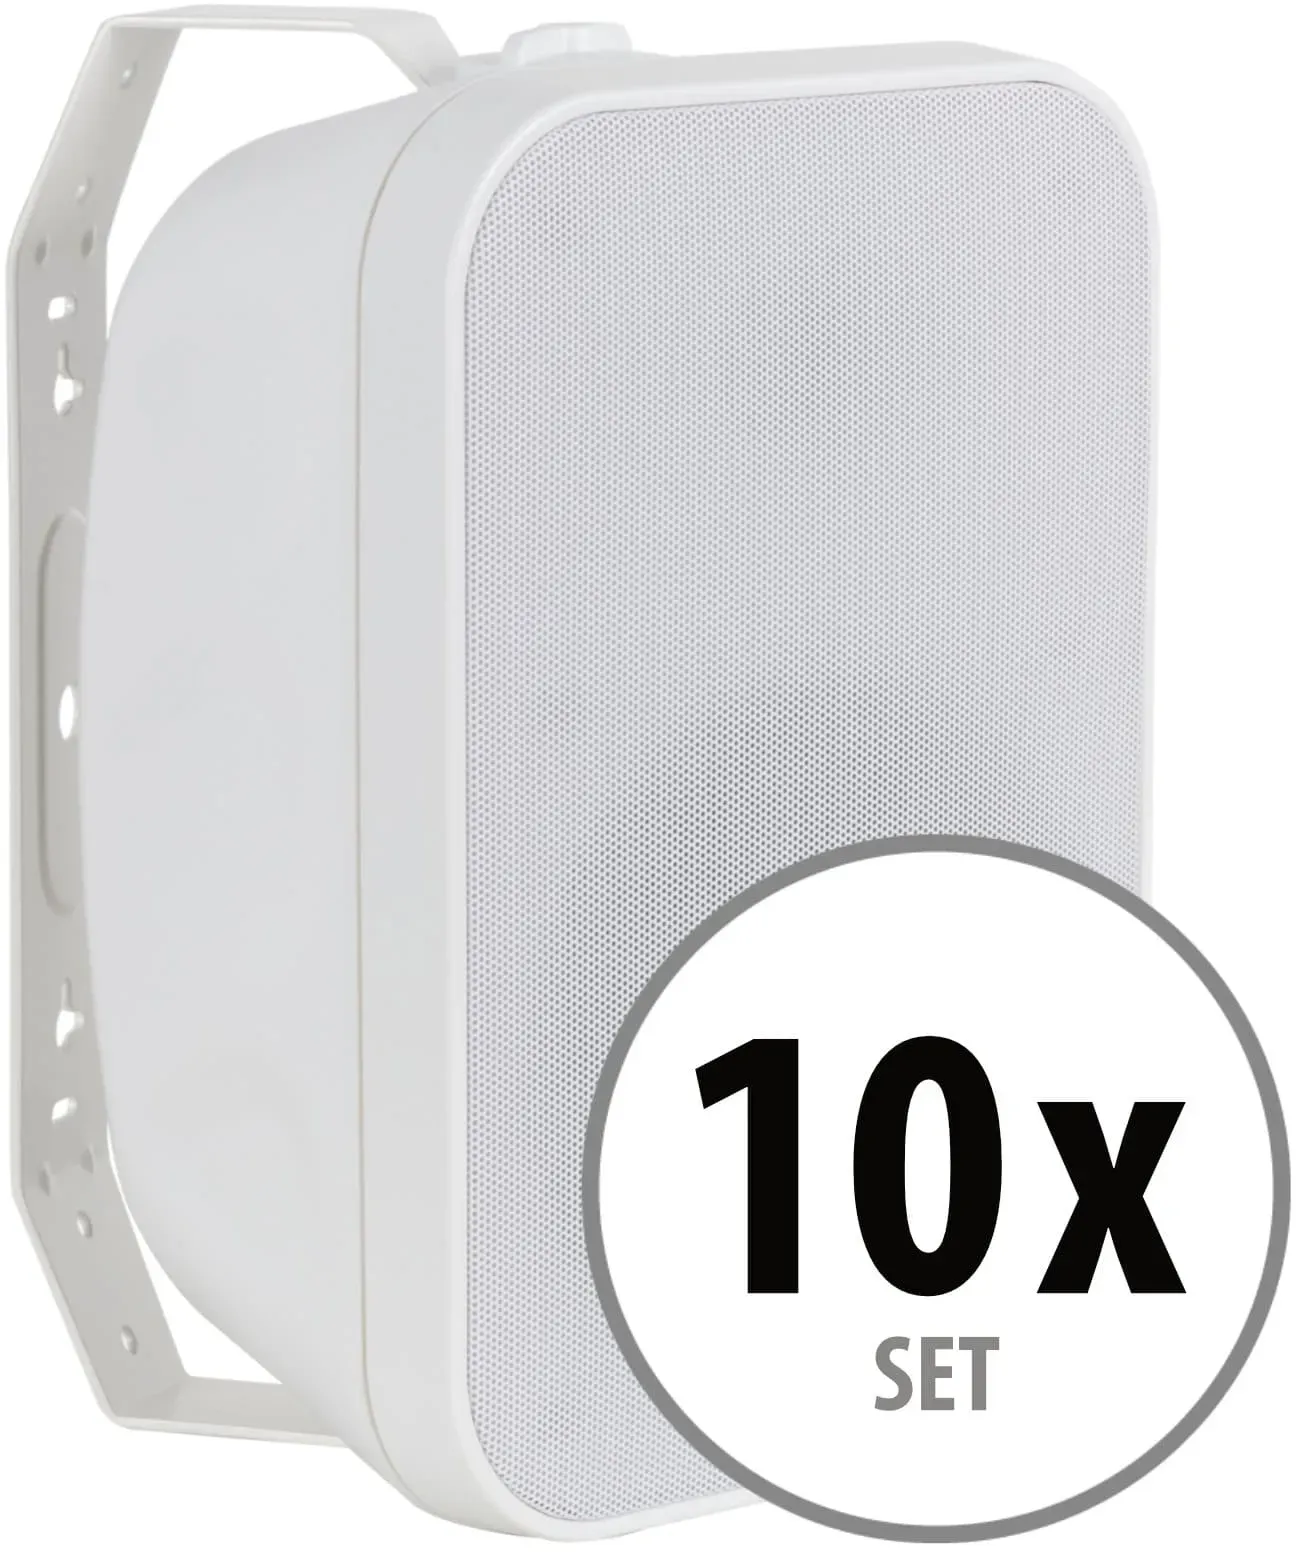 McGrey OLS-5251WH Outdoor-Lautsprecher 50 Watt Weiß 10x Set